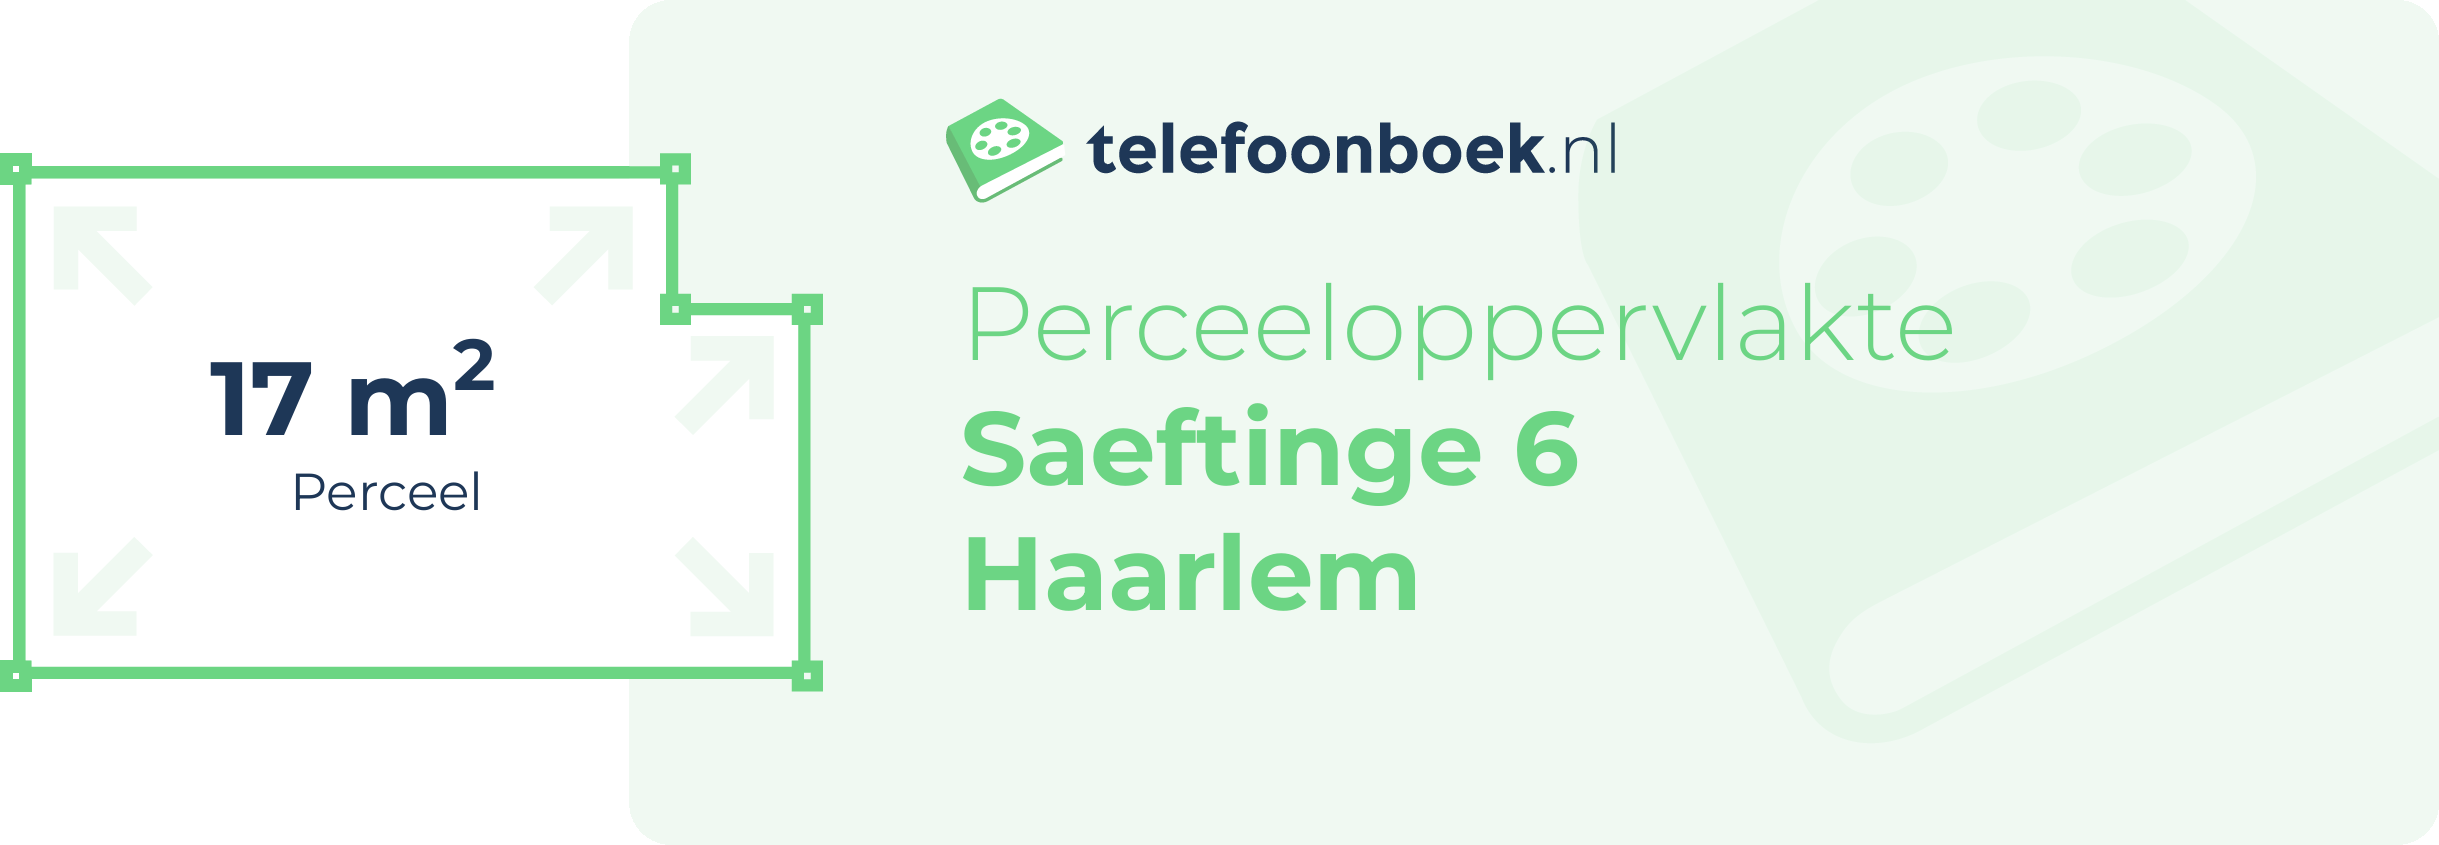 Perceeloppervlakte Saeftinge 6 Haarlem